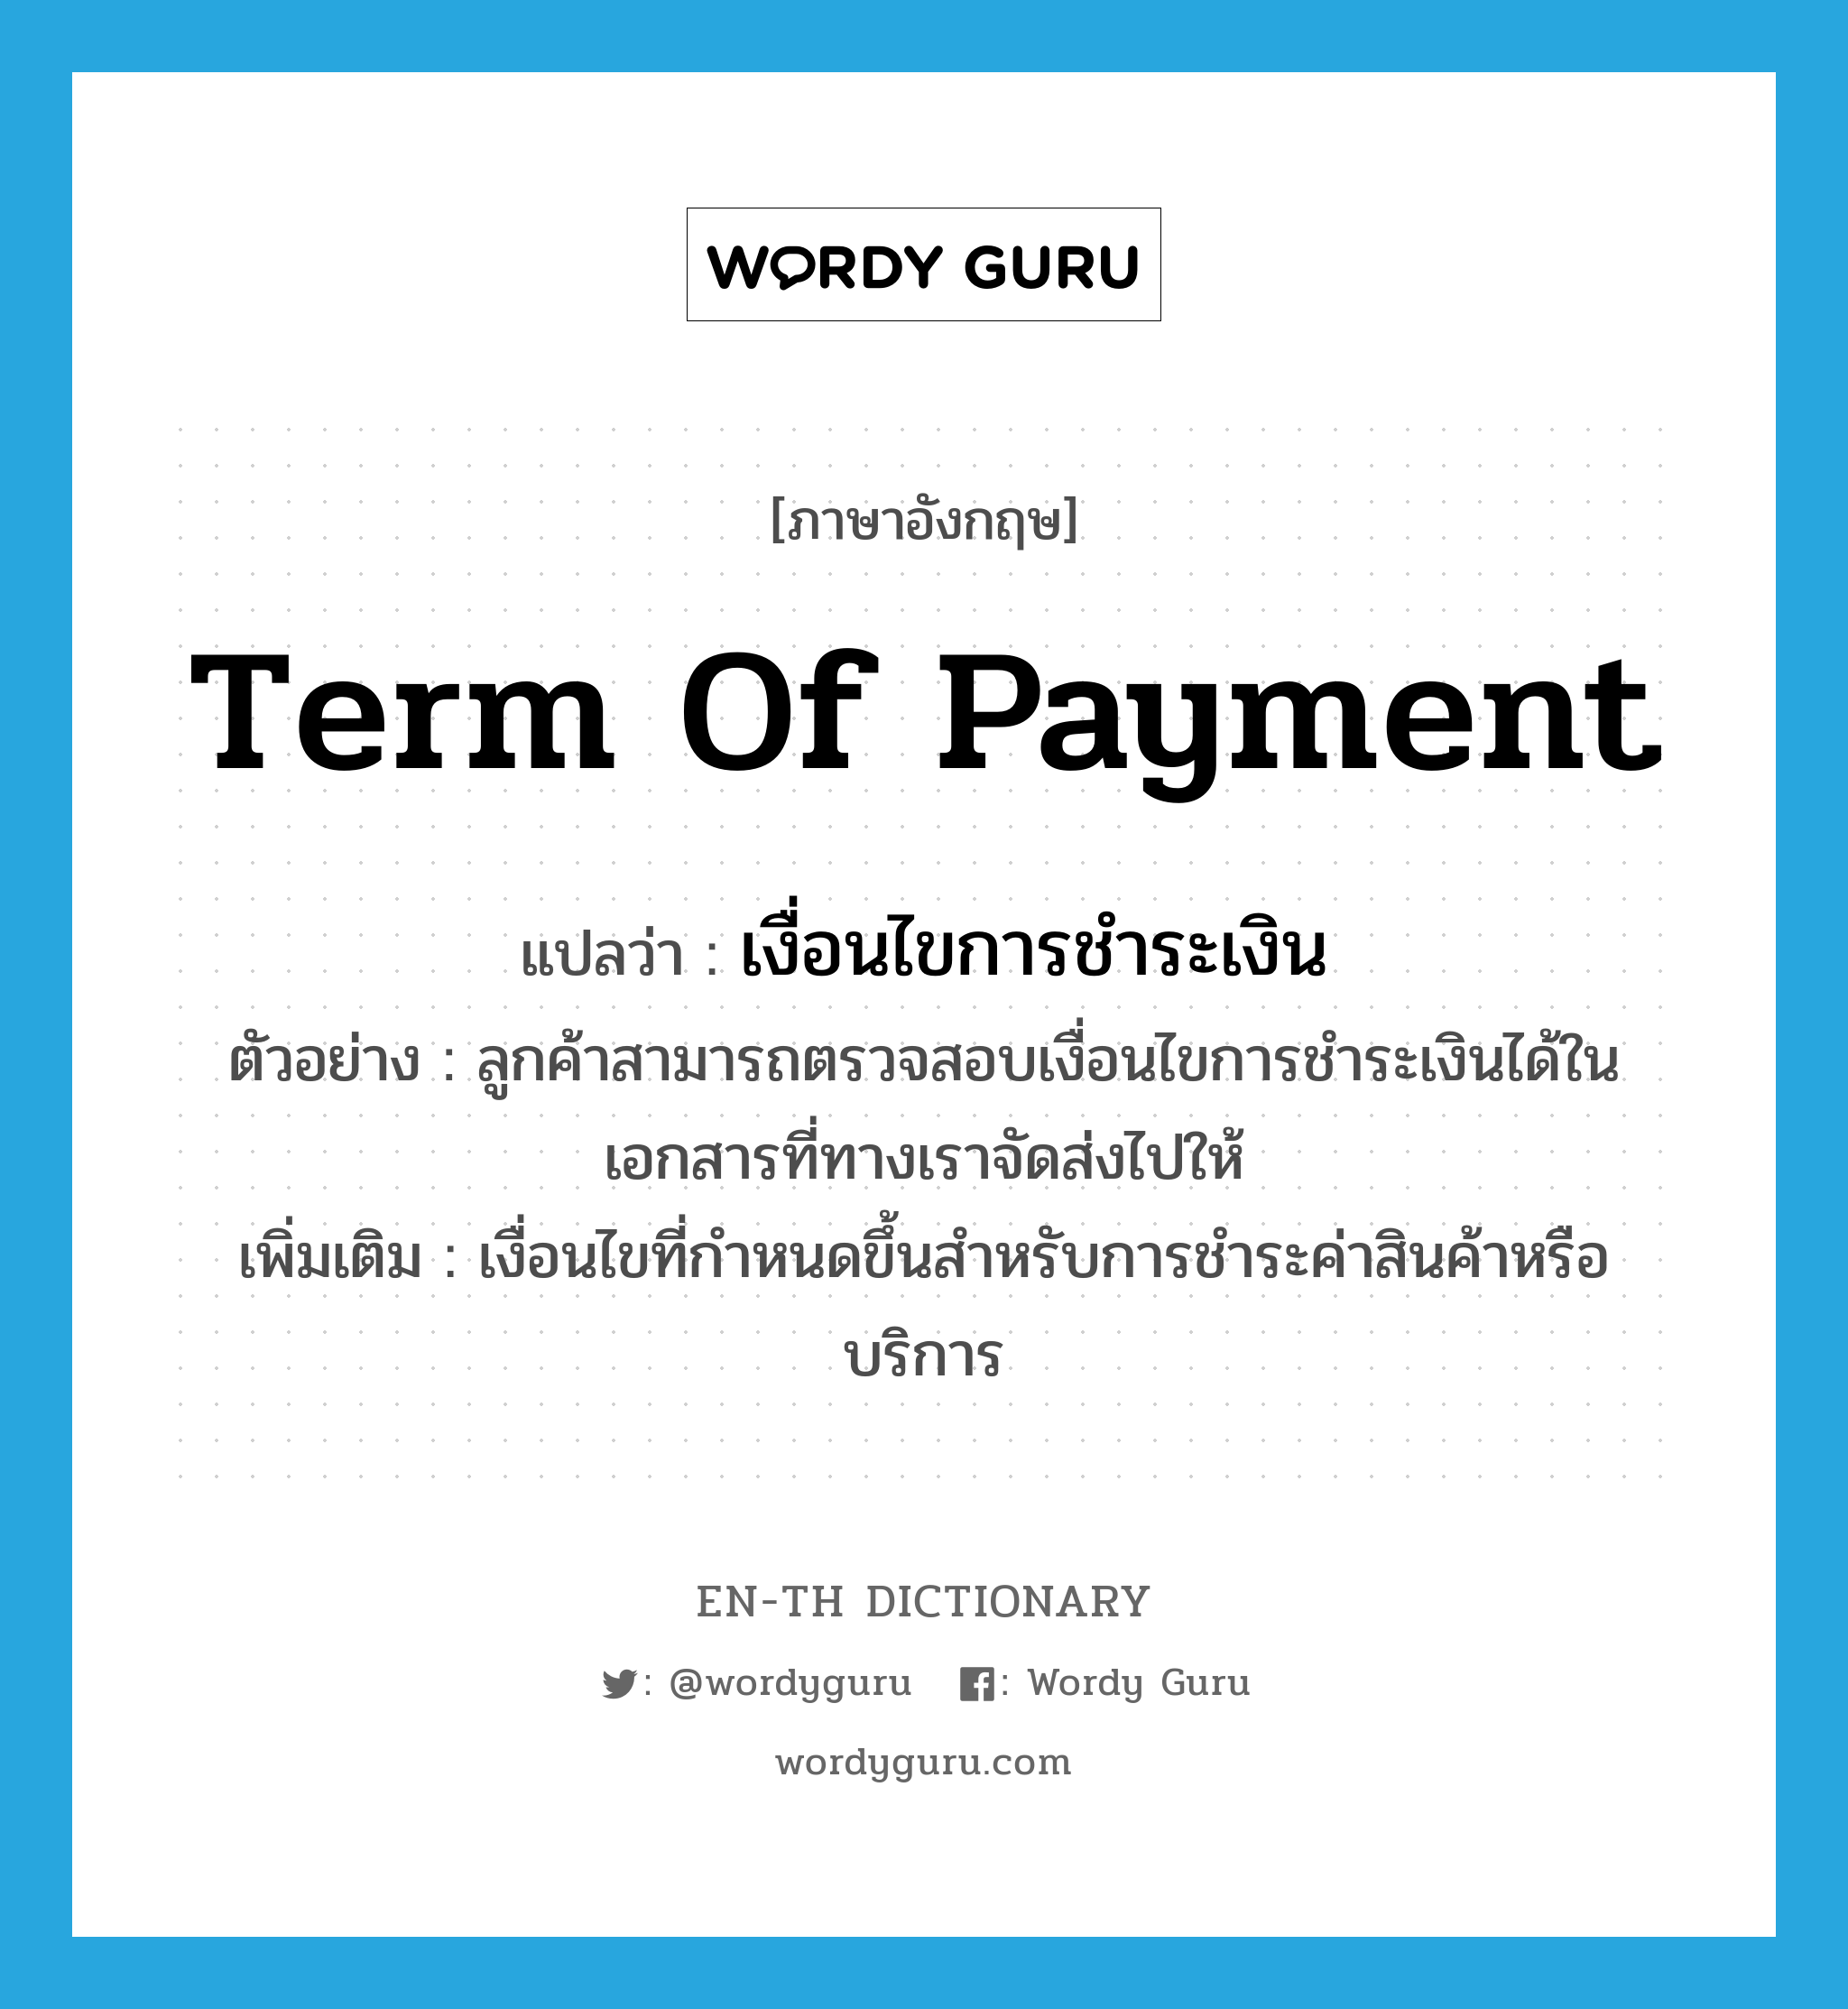 เงื่อนไขการชำระเงิน ภาษาอังกฤษ?, คำศัพท์ภาษาอังกฤษ เงื่อนไขการชำระเงิน แปลว่า term of payment ประเภท N ตัวอย่าง ลูกค้าสามารถตรวจสอบเงื่อนไขการชำระเงินได้ในเอกสารที่ทางเราจัดส่งไปให้ เพิ่มเติม เงื่อนไขที่กำหนดขึ้นสำหรับการชำระค่าสินค้าหรือบริการ หมวด N